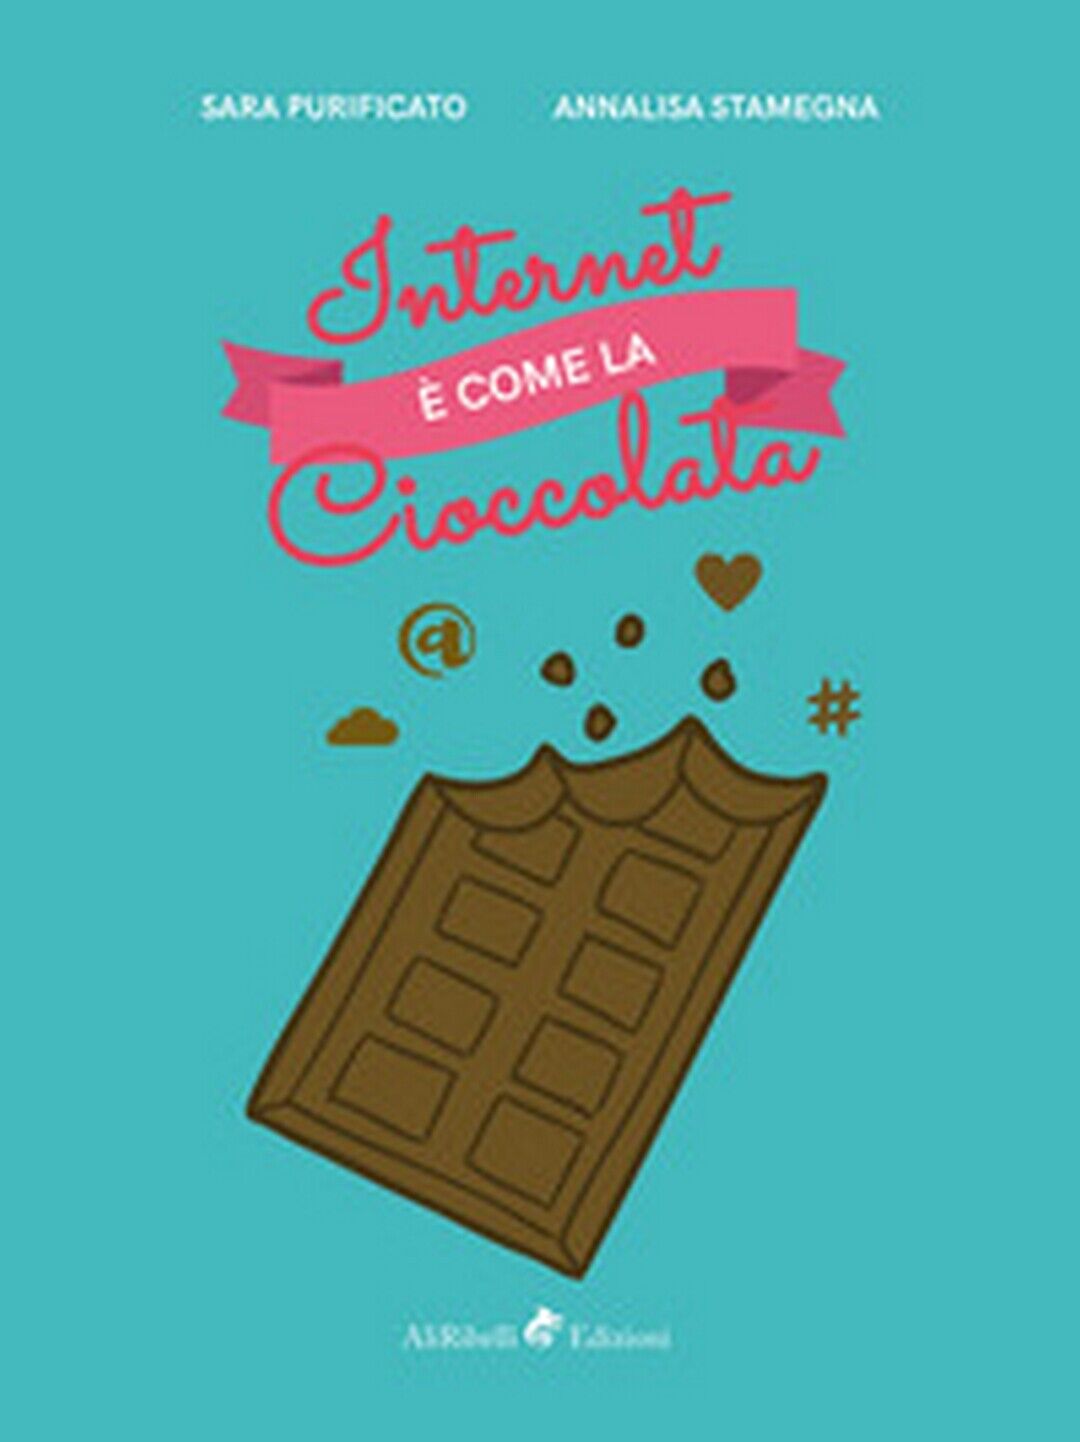 Internet ? come la cioccolata  - Annalisa Stamegna, Sara Purificato, 2018